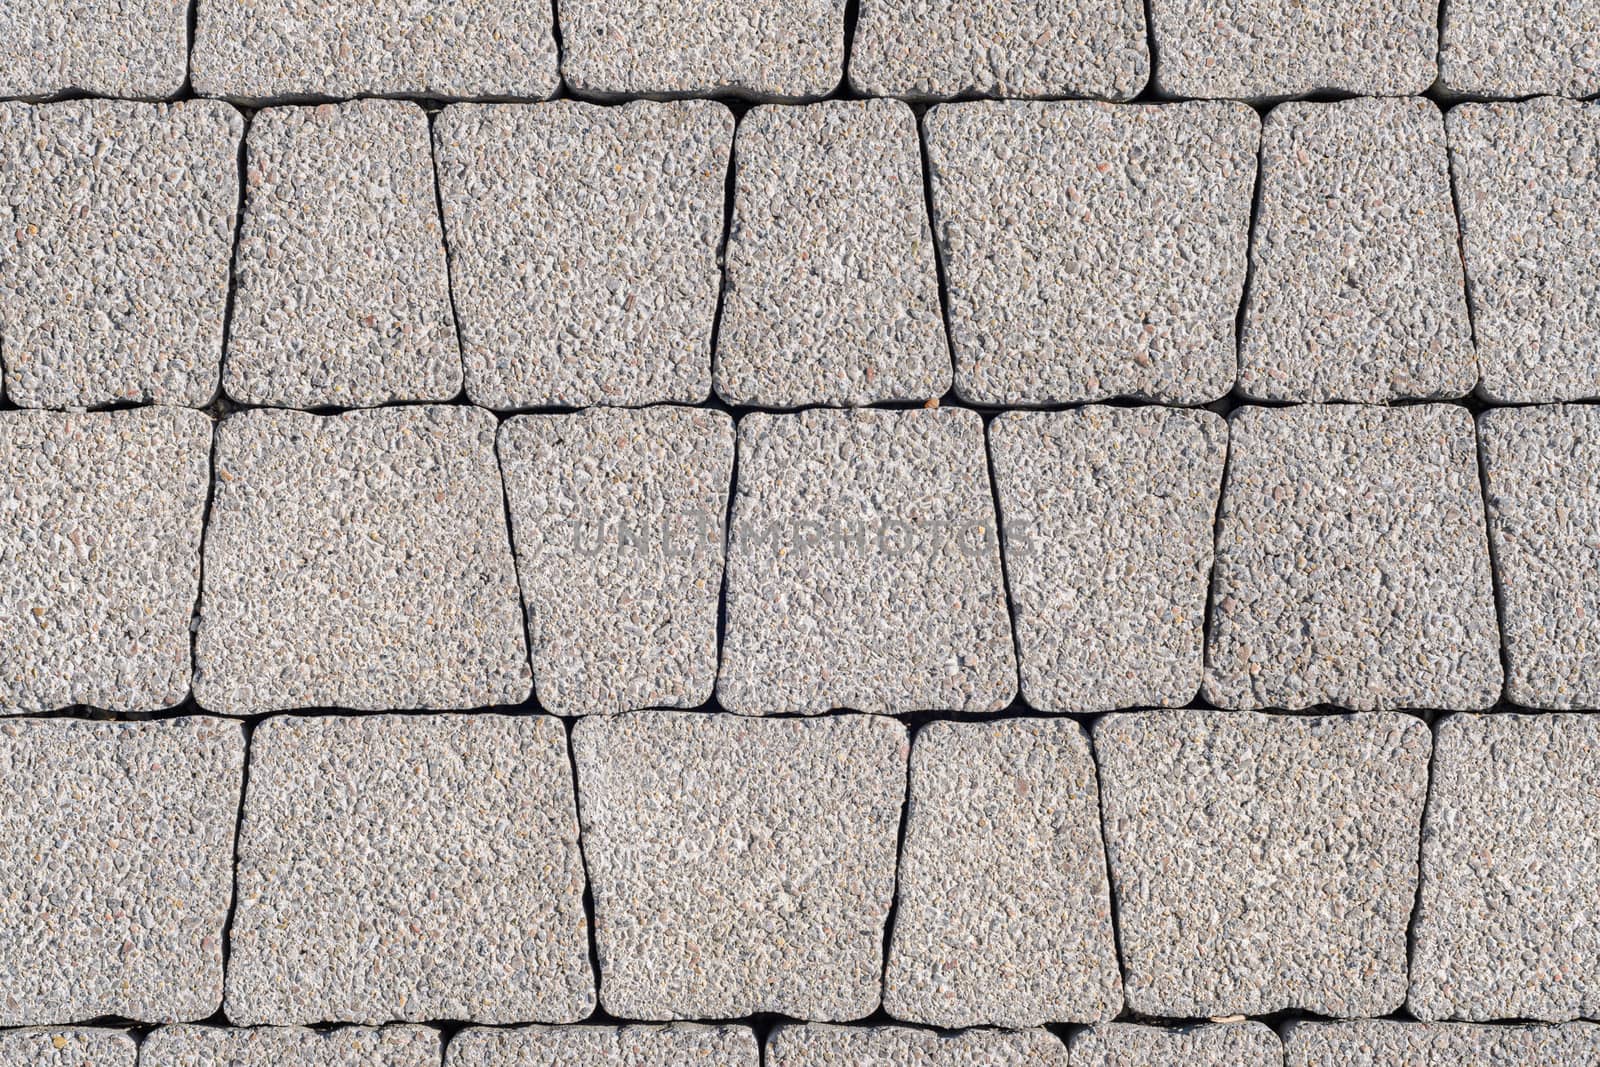 Background - gray paving stones of trapezoidal shape